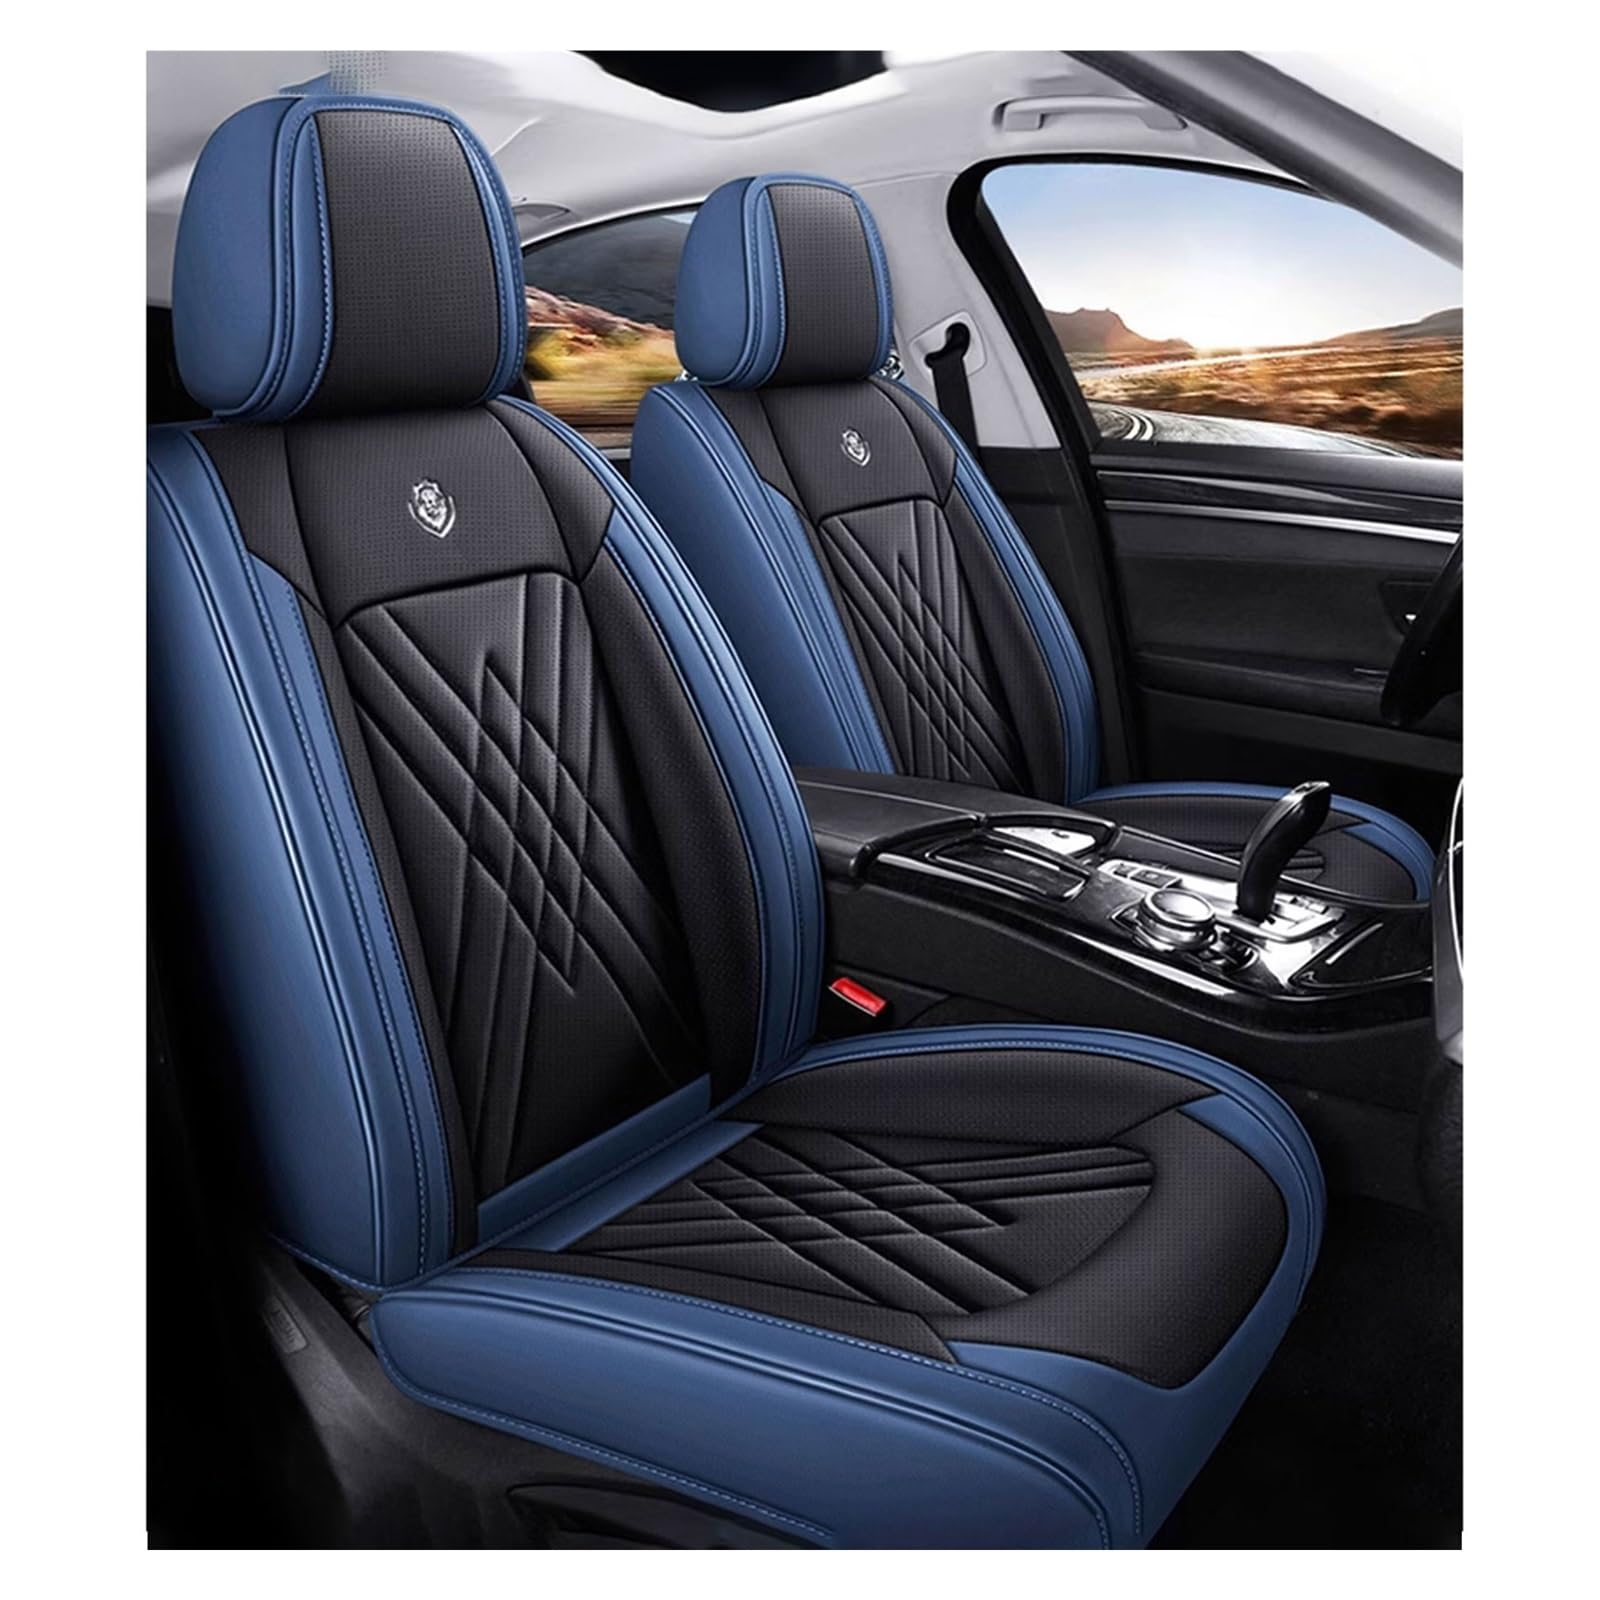 ZARUXCHA Universal-Sitzbezug Komplett-Set Für Skoda Superb 2015-2019, AutositzbezüGe Set Leder, 5-Sitze Universal-SitzbezüGe Auto Komplettset(D(Blue-Black)) von ZARUXCHA